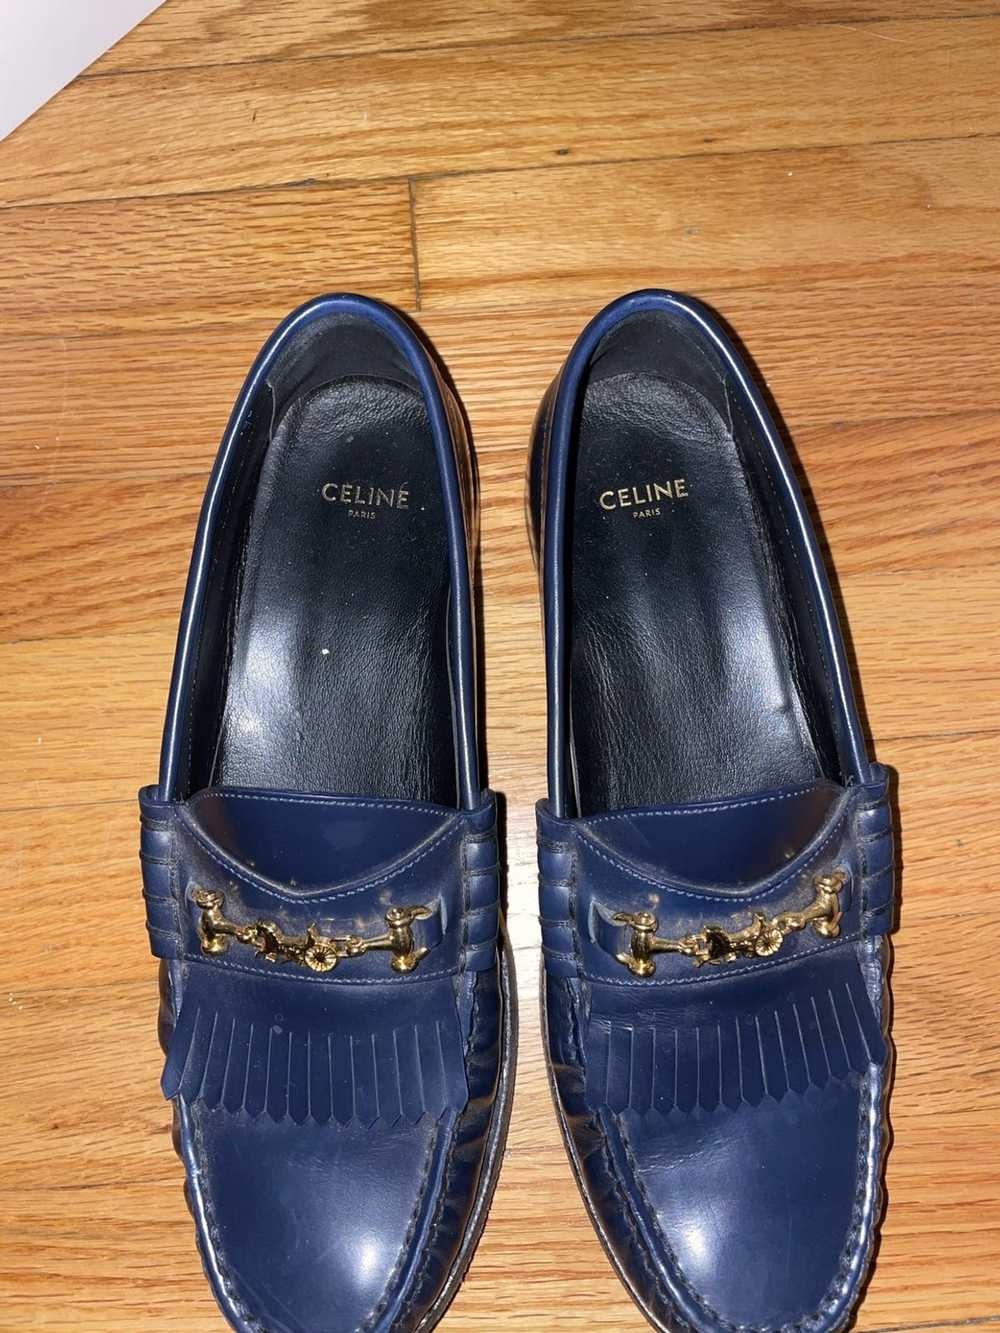 Celine Celine sulky loafer - image 7